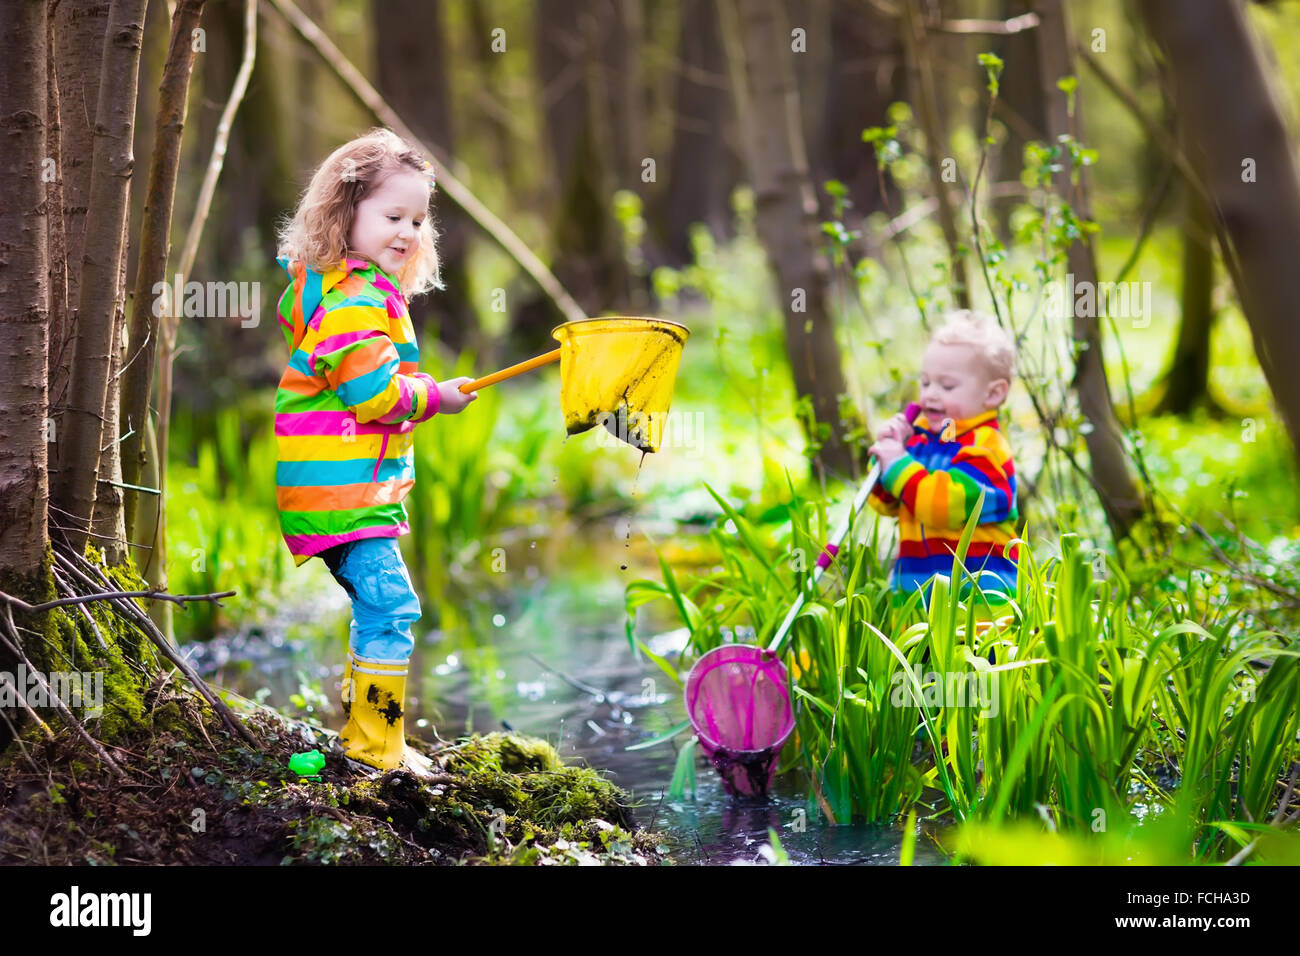 https://c8.alamy.com/comp/FCHA3D/children-playing-outdoors-preschool-kids-catching-frog-with-net-boy-FCHA3D.jpg